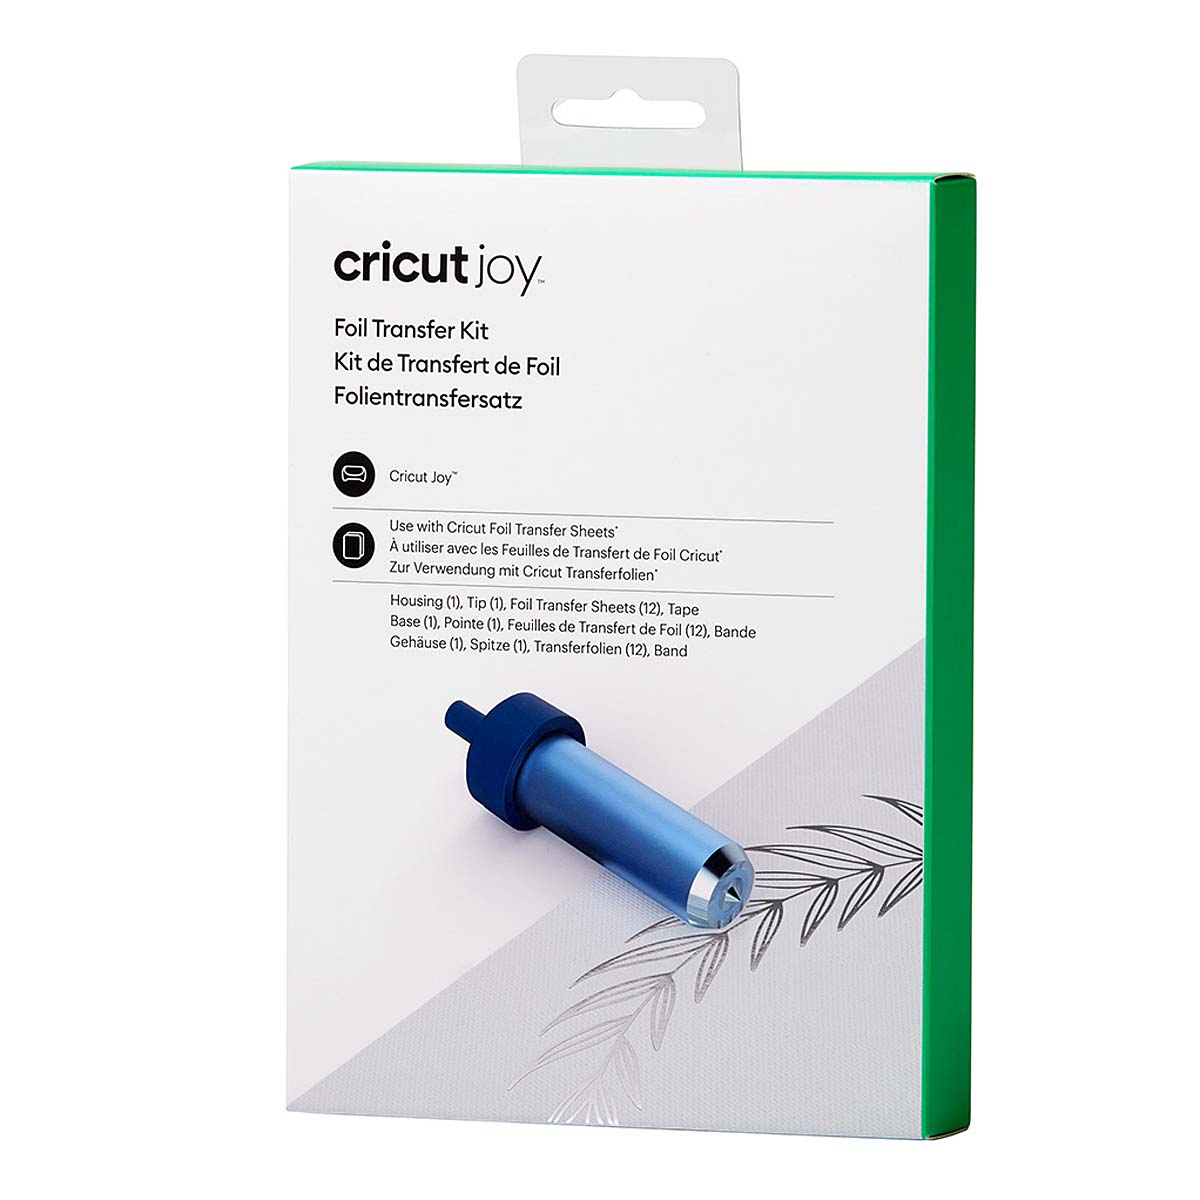 Use the Cricut Joy Foil Transfer Tool on the Cricut Joy App 